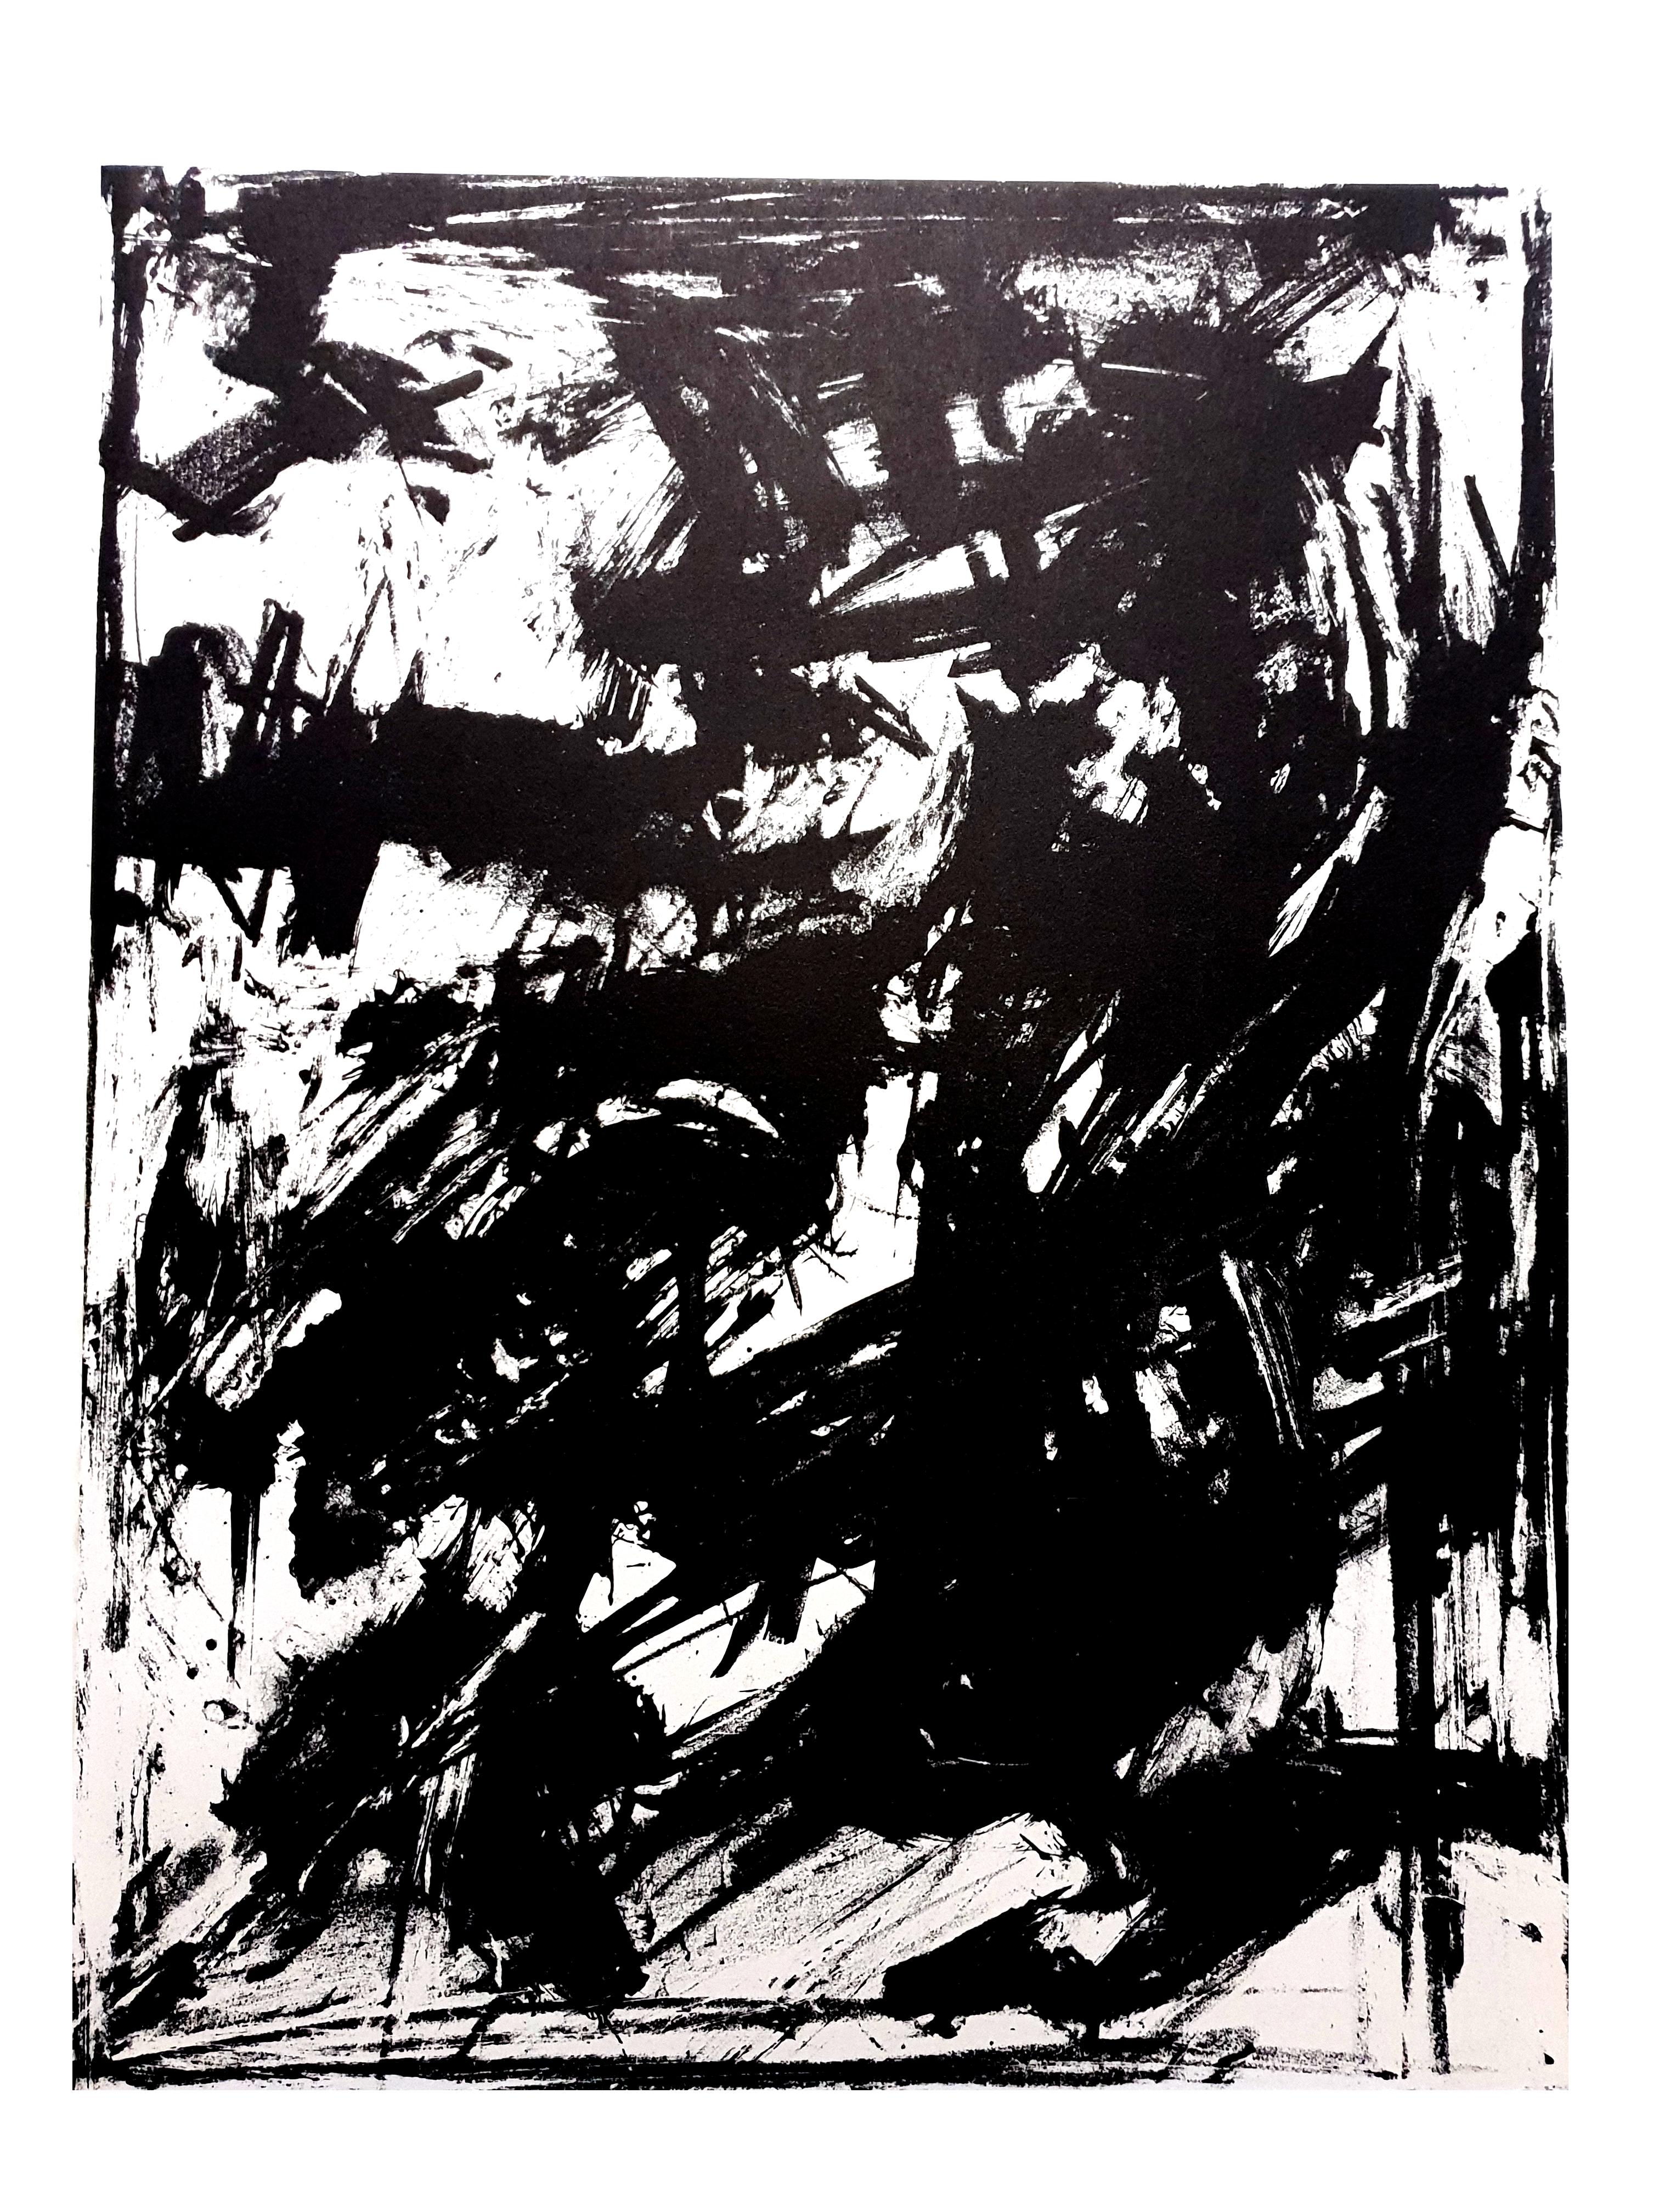 Emilio Vedova - Lithographie originale
Abstraction
1961
De la revue d'art XXe siècle
Dimensions : 32 x 24
Edition : G. di San Lazzaro.
Non signé et non numéroté tel que publié